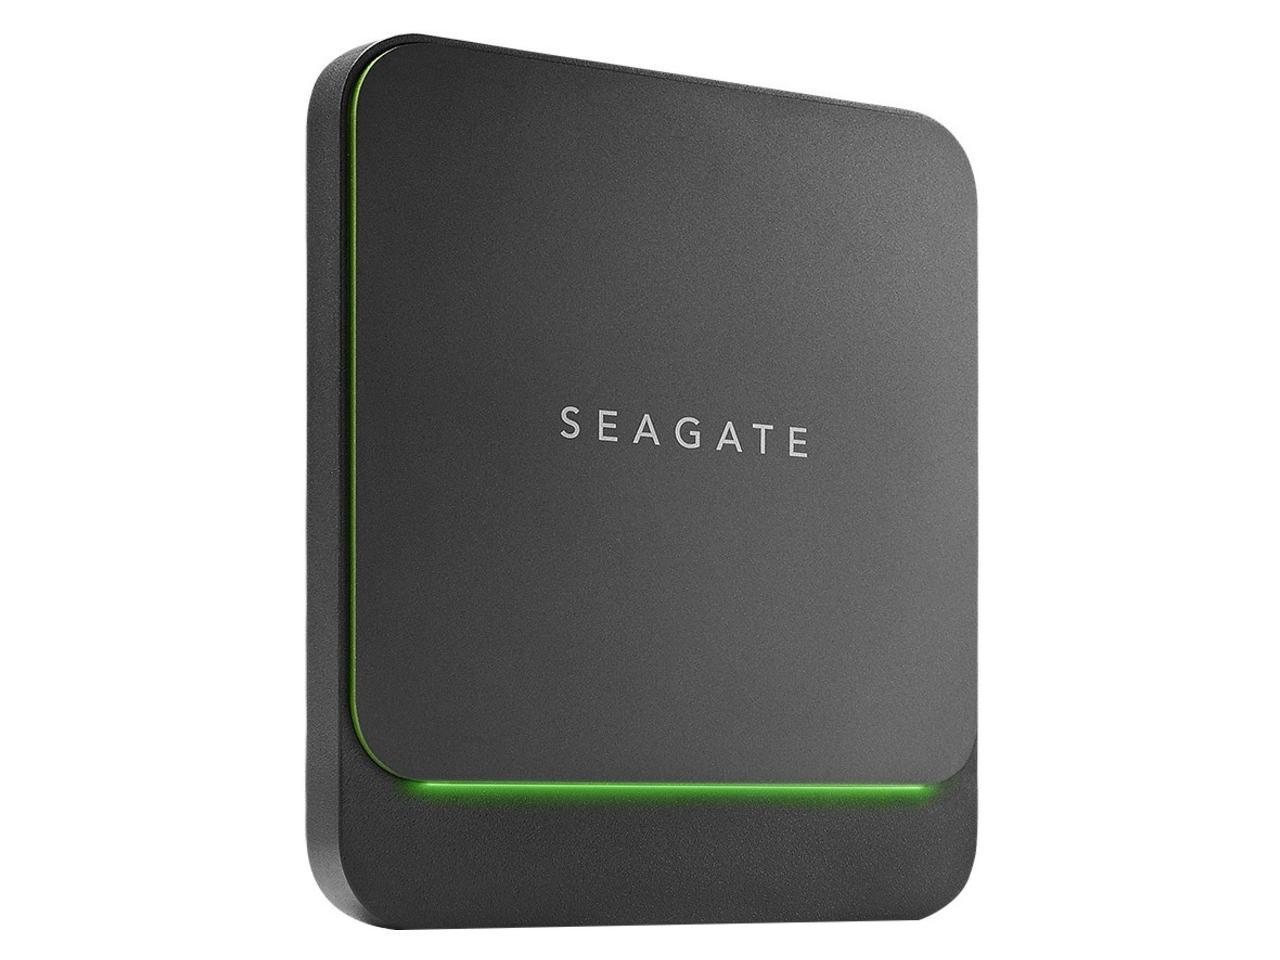 seagate sata drivers for windows 7 download